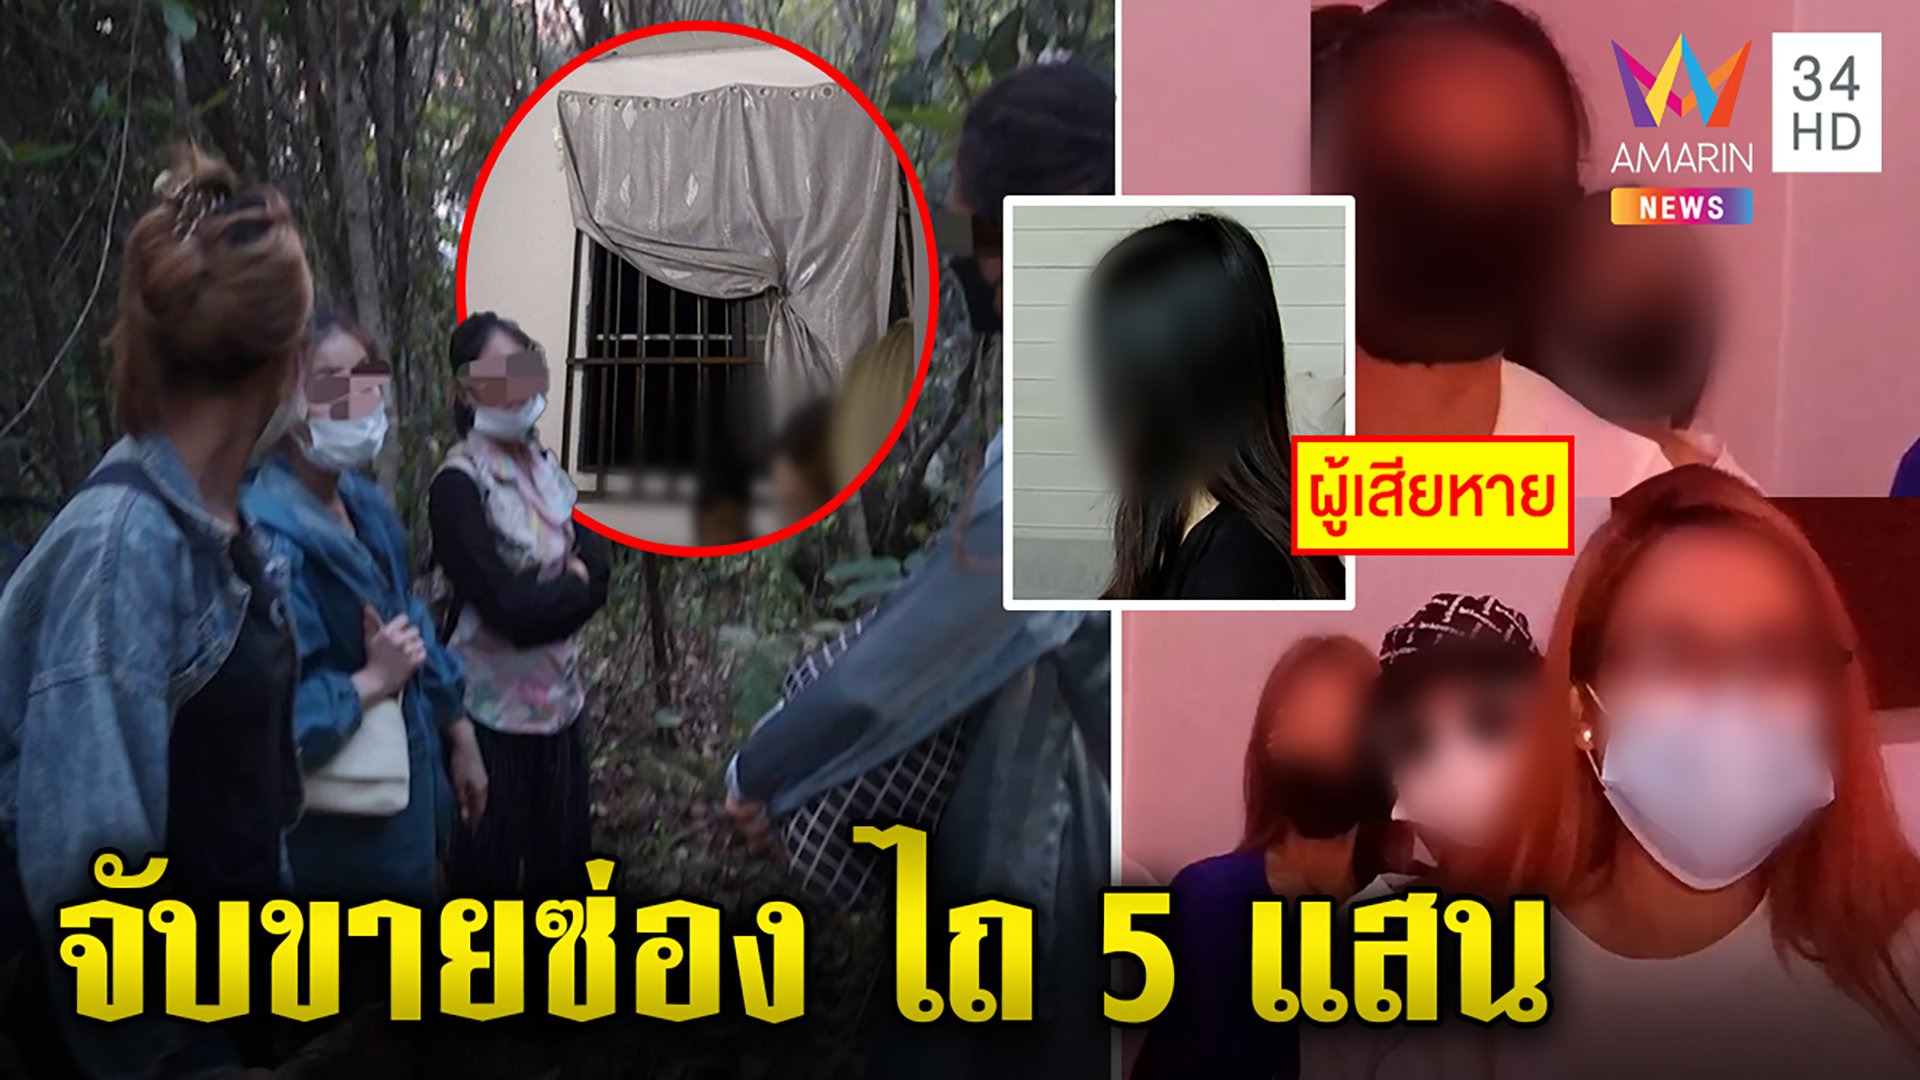 6 สาวไทยแฉถูกจับขายซ่องเรียกค่าไถ่ 5 แสน เหยื่อหนีนรกโชว์ห้องขังคนหนีค้ากาม | ทุบโต๊ะข่าว | 11 มิ.ย. 65 | AMARIN TVHD34